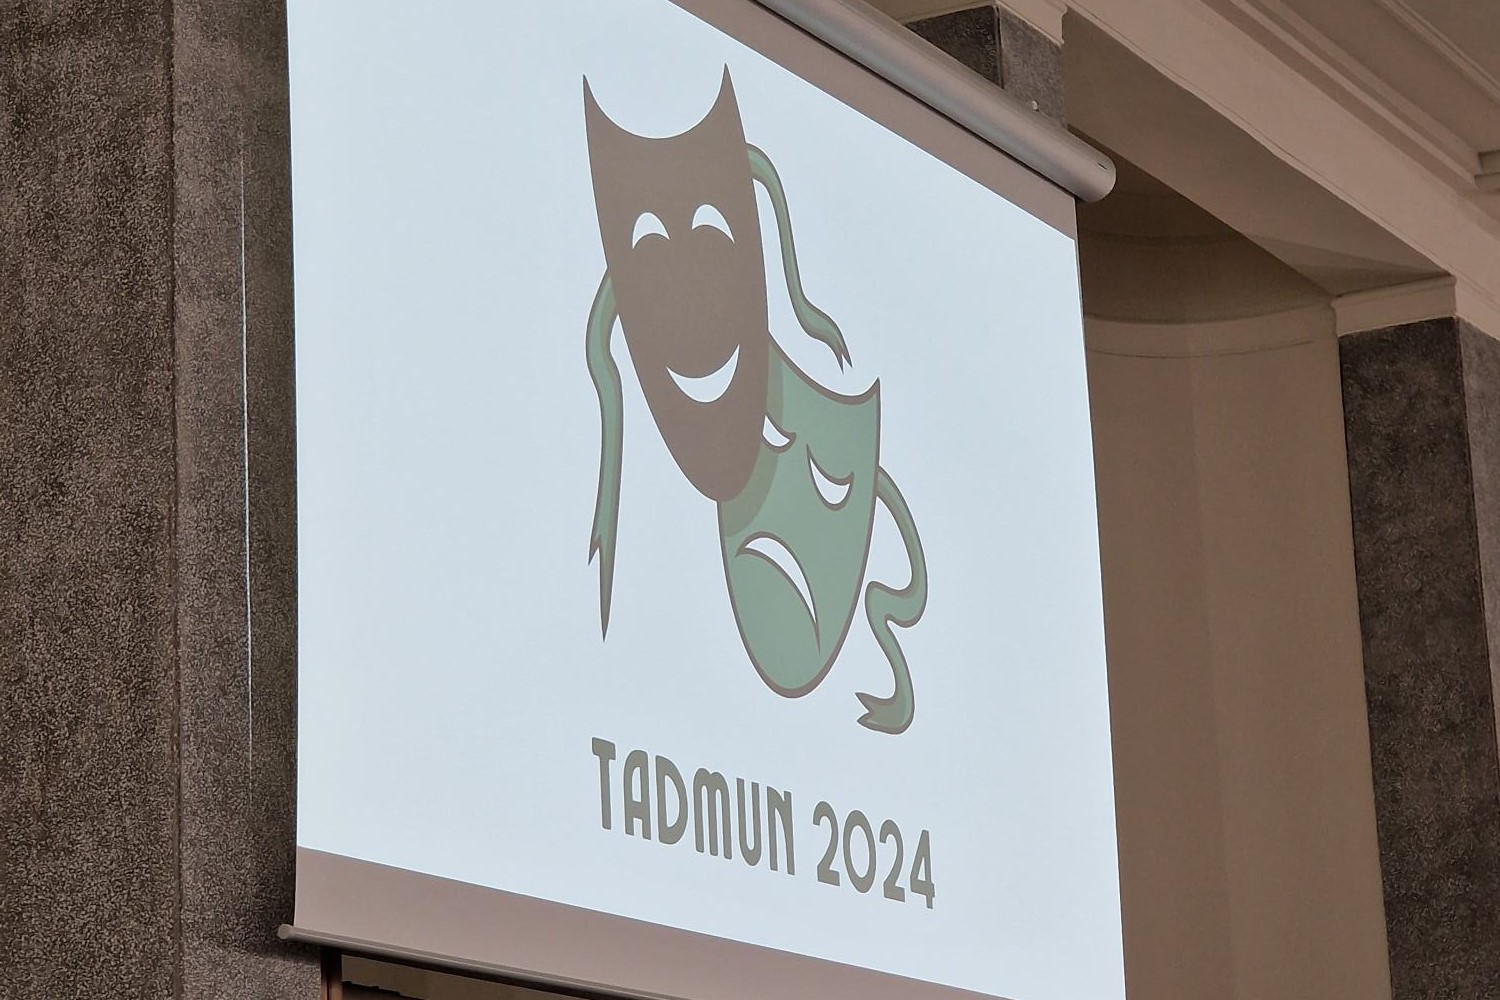 1 slajd prezentacji na którym widać napis TADMUN 2024 wraz z logiem